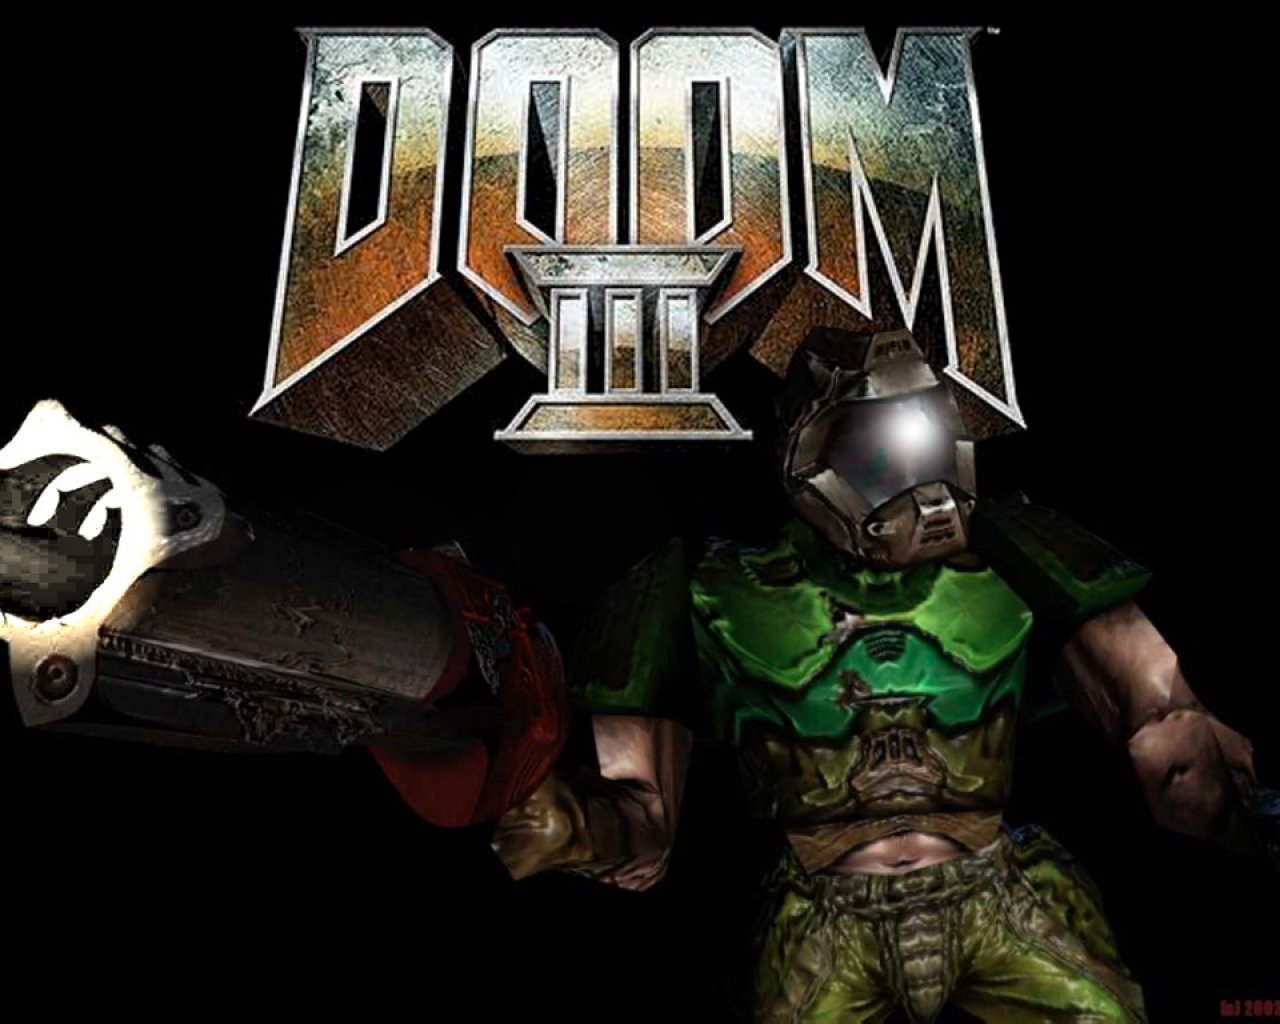 Doom 3 Backgrounds